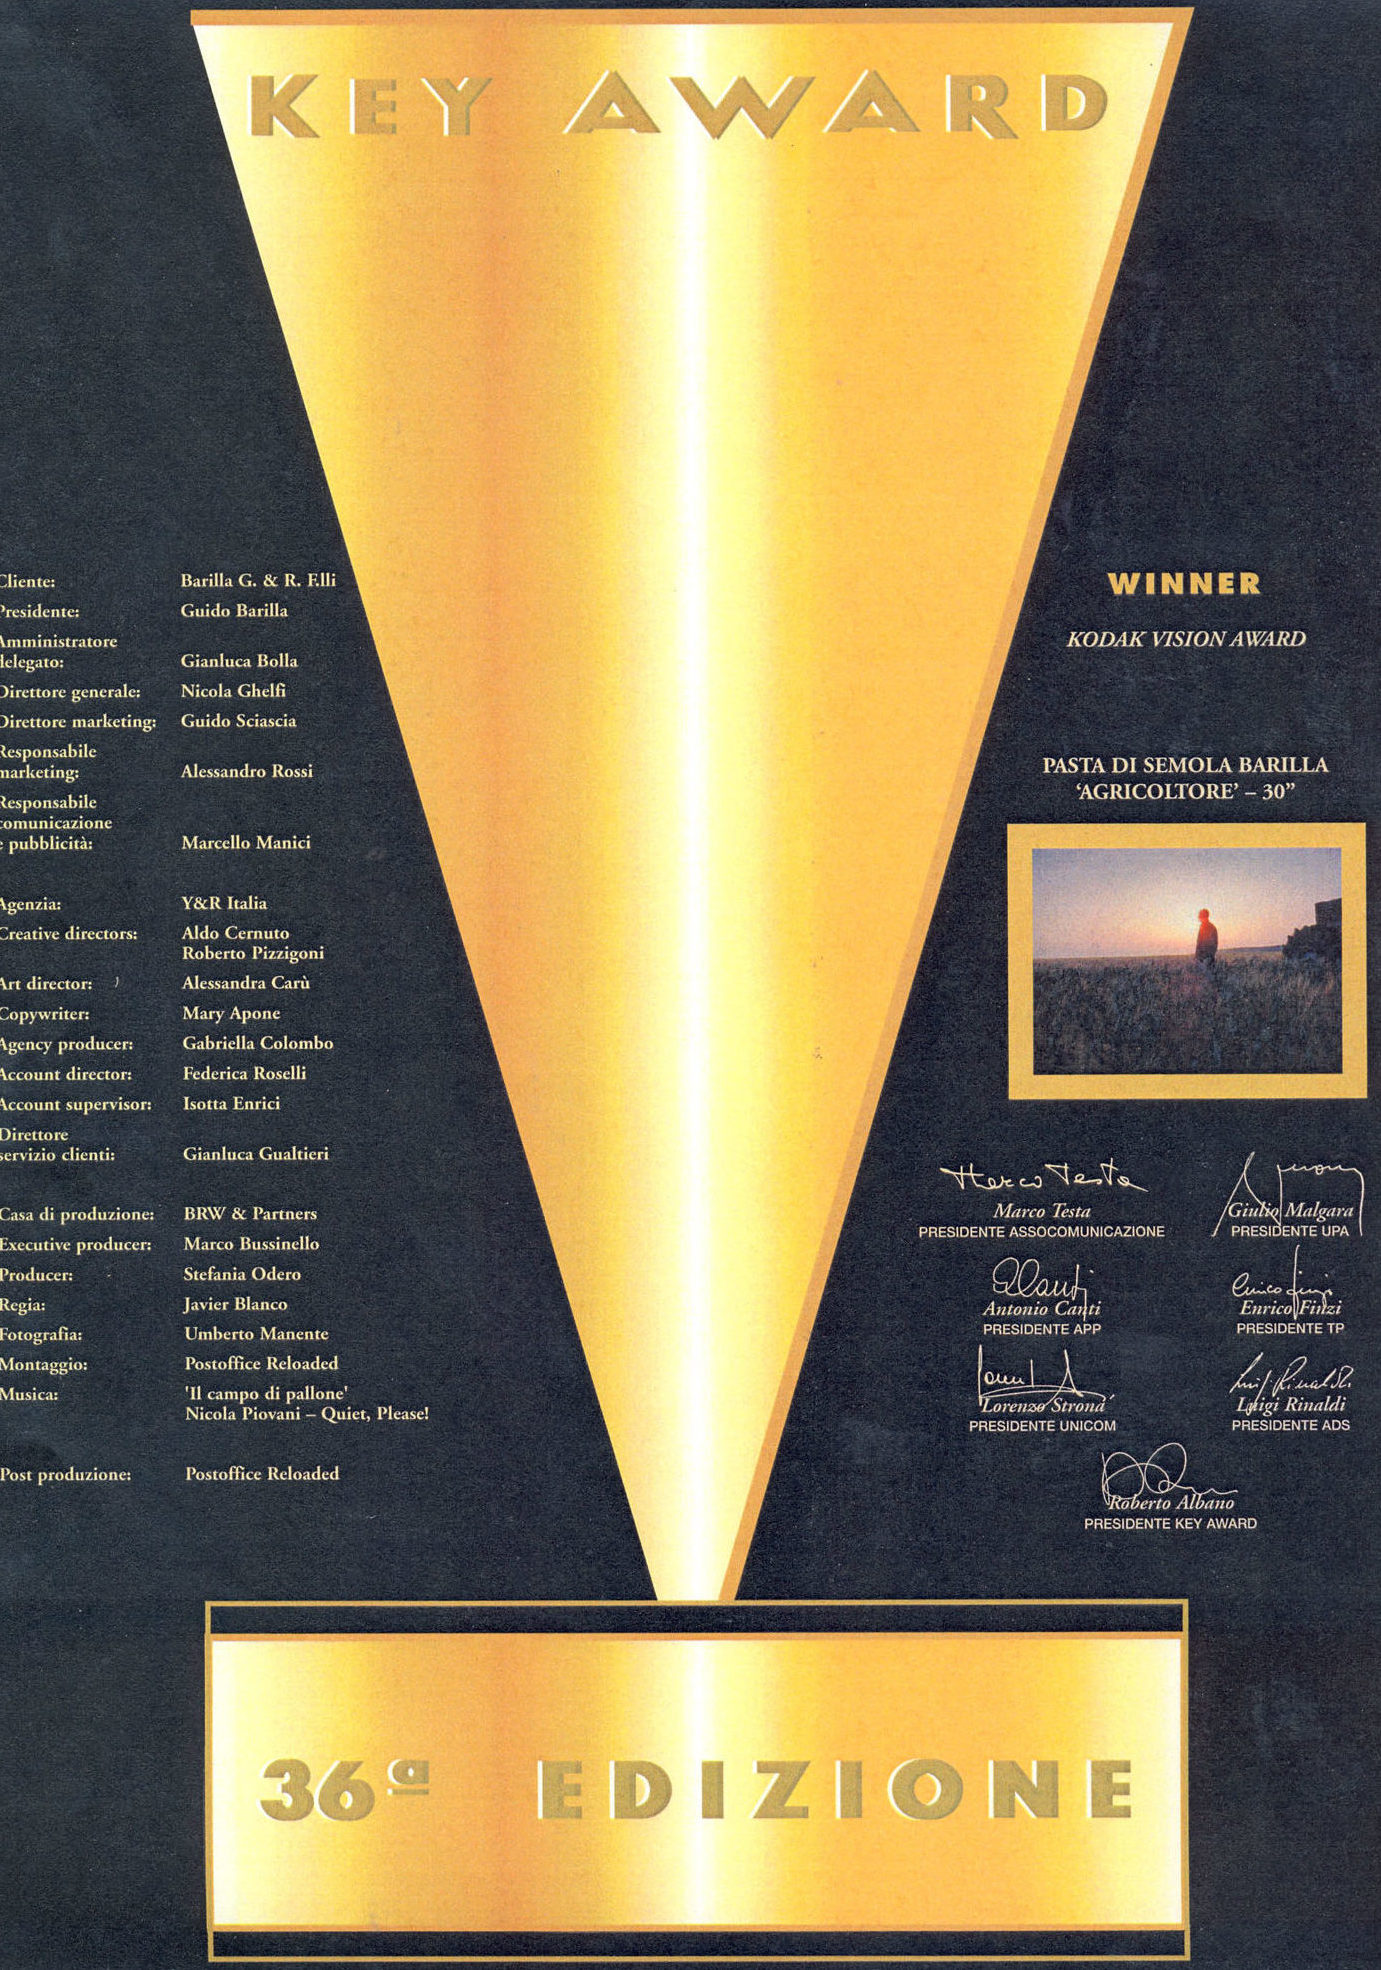 2005 - Diploma - Key Award. 36 edizione - Diploma Key Award conferito a Barilla in occasione della pubblicità Pasta di Semola Barilla "Agricoltore - 30" [BAR I Ha 284]